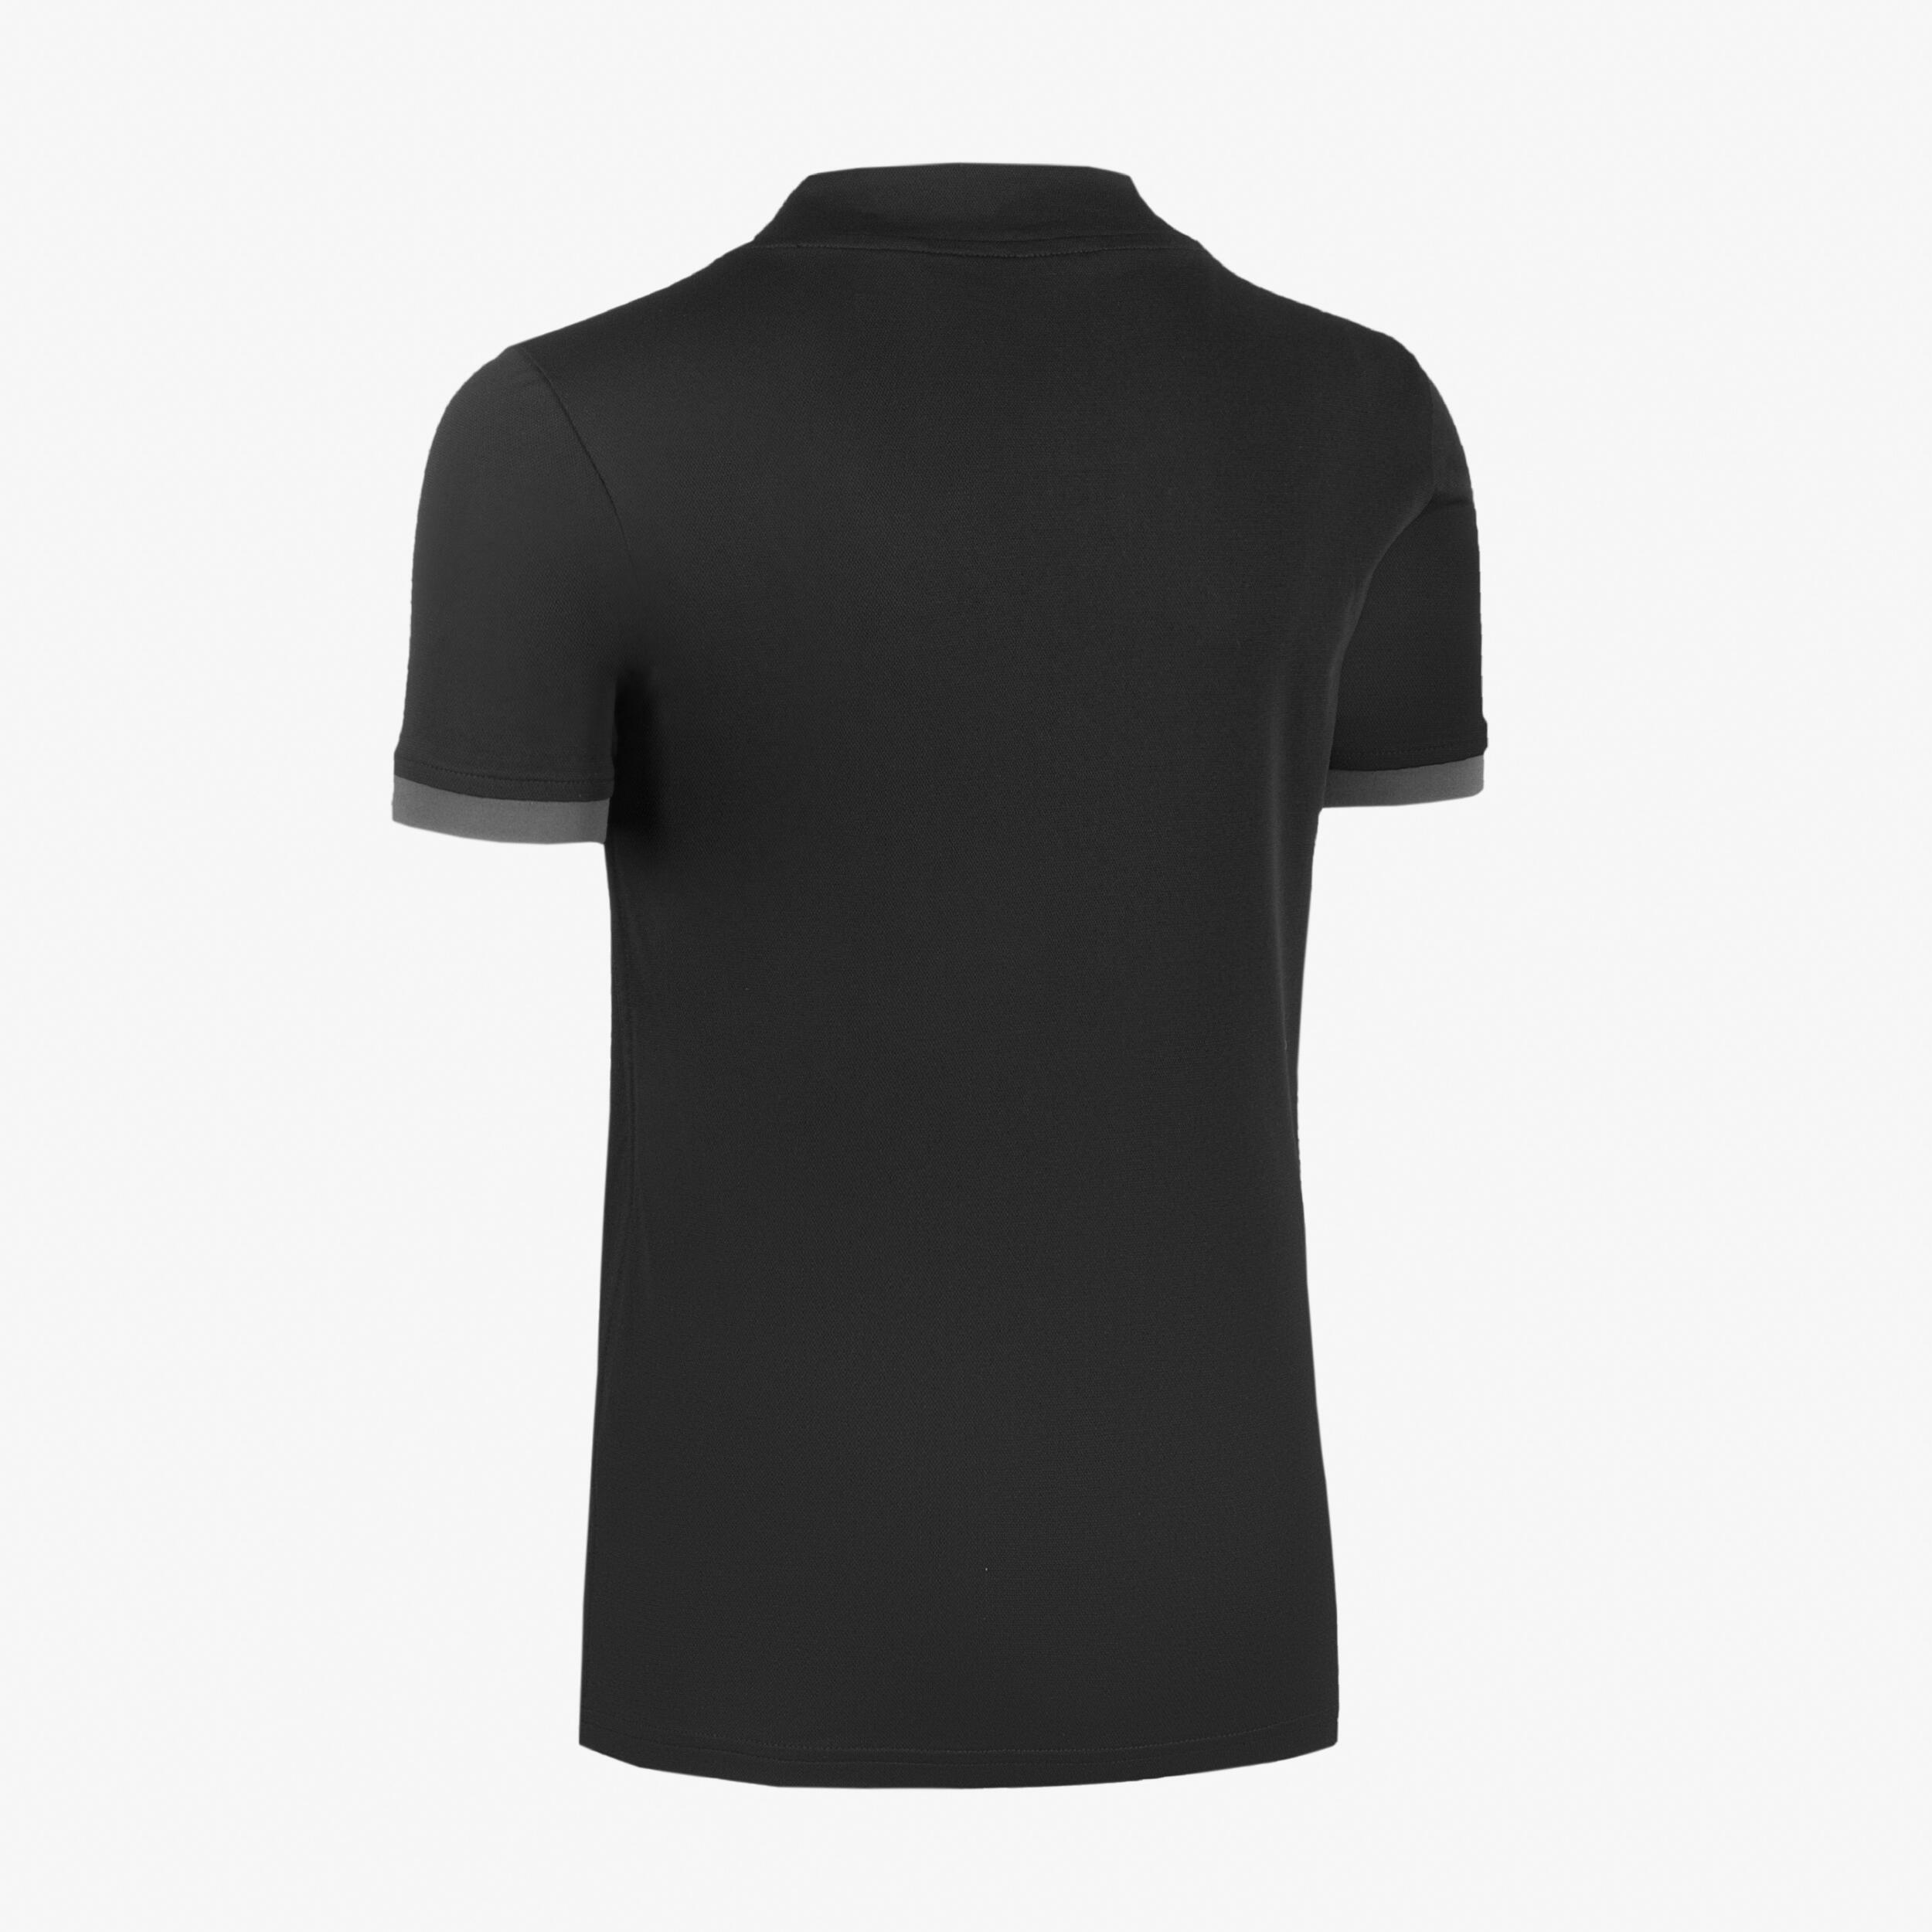 Kids' Short-Sleeved Rugby Shirt R100 - Black 3/4